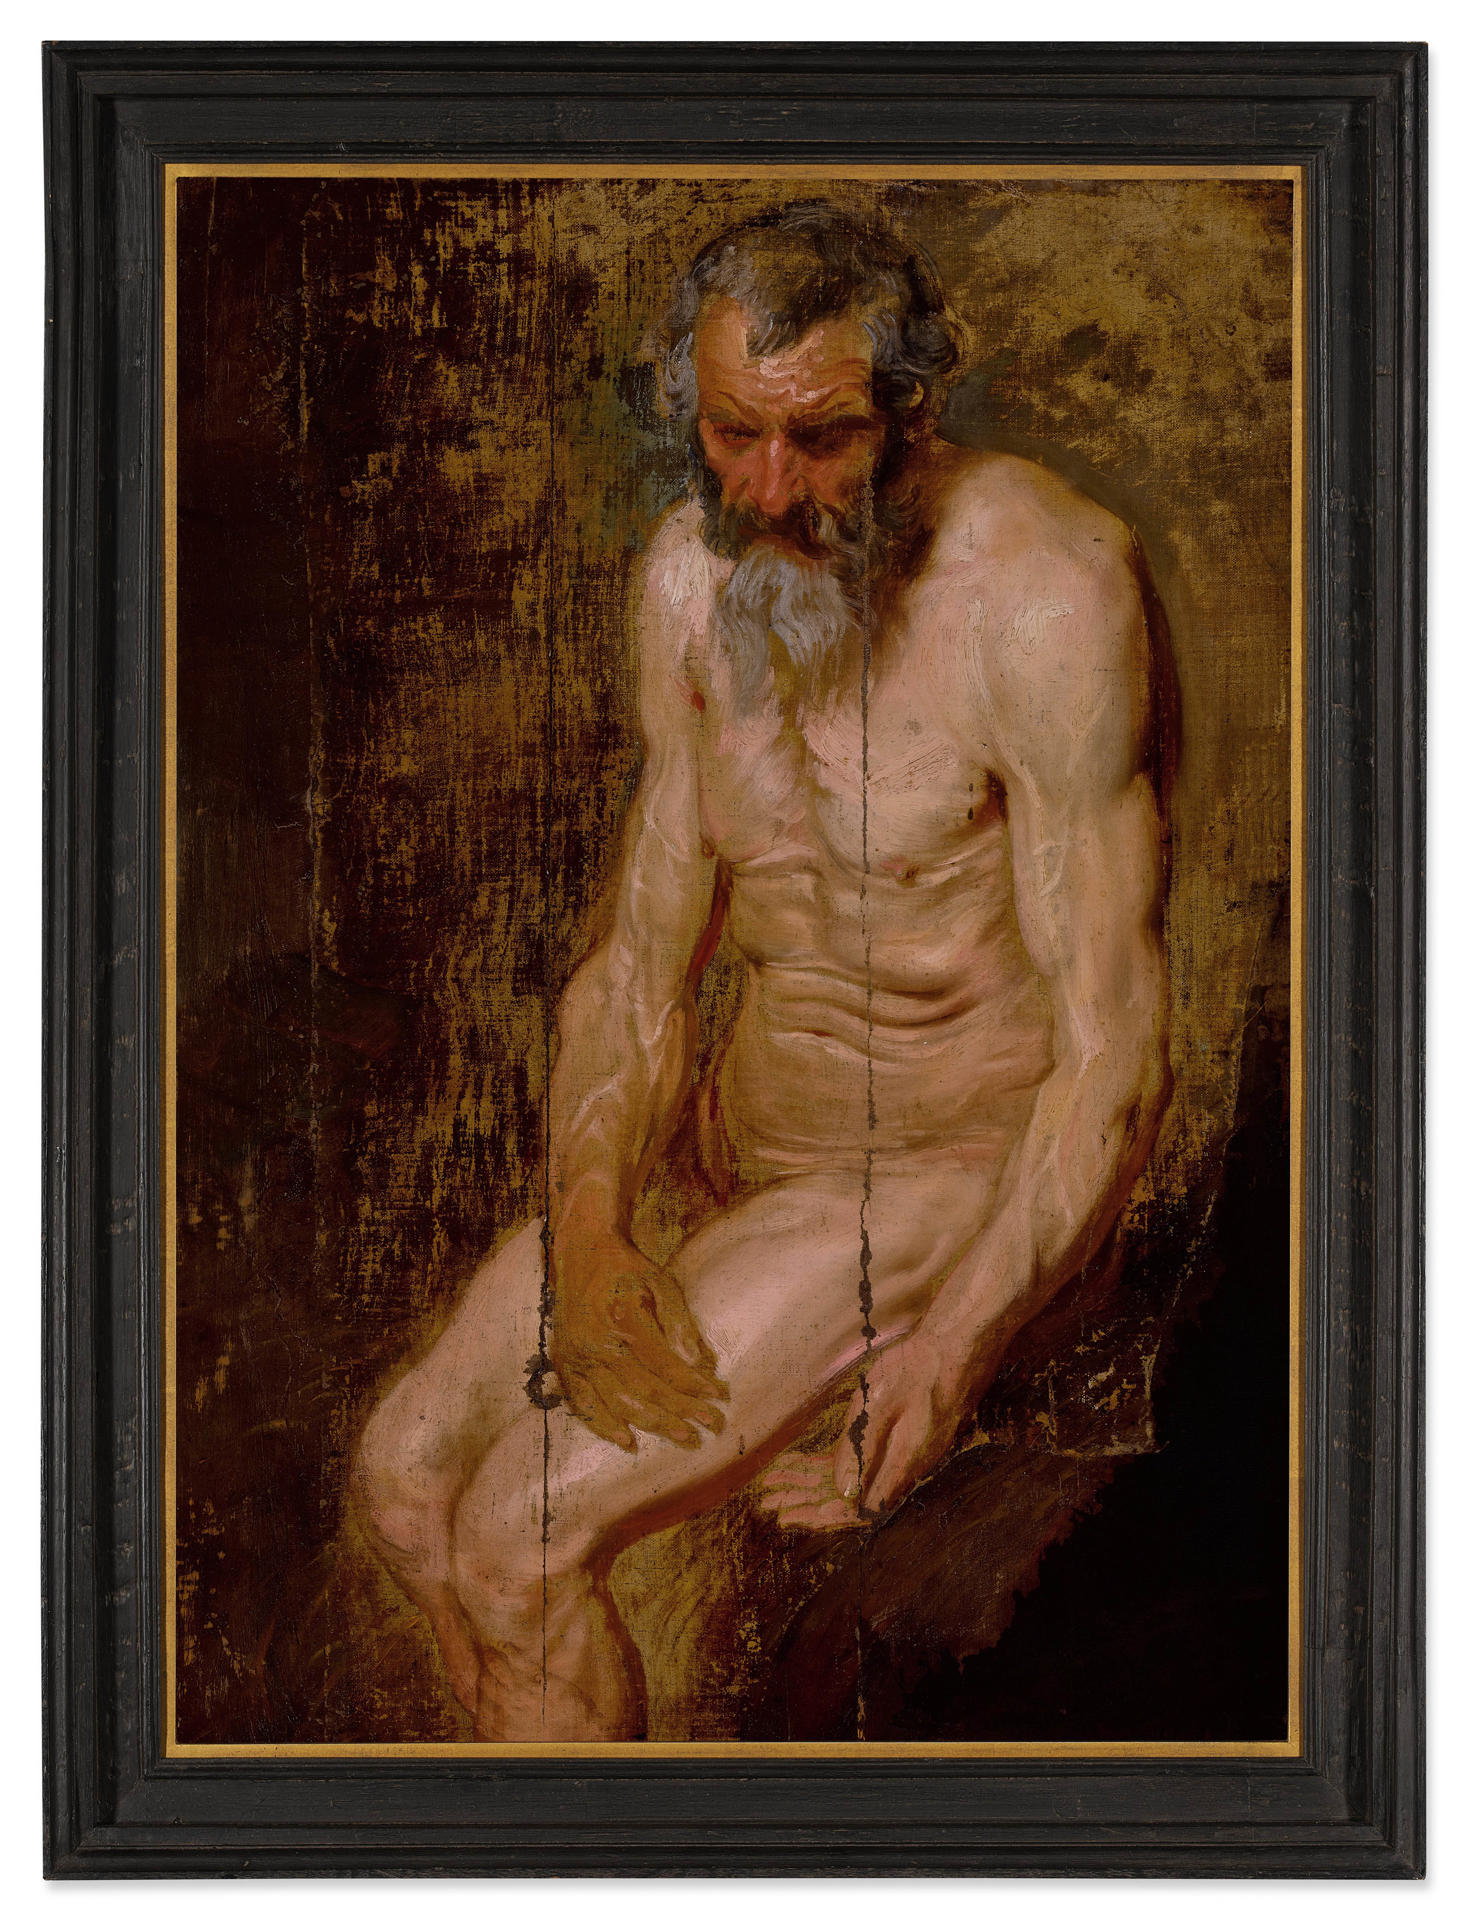 Fotografía cedida por la casa de subastas Sotheby's donde se muestra una obra del pintor y grabador flamenco Van Dyck llamada "Estudio para San Jerónimo con un ángel". EFE/Sotheby's